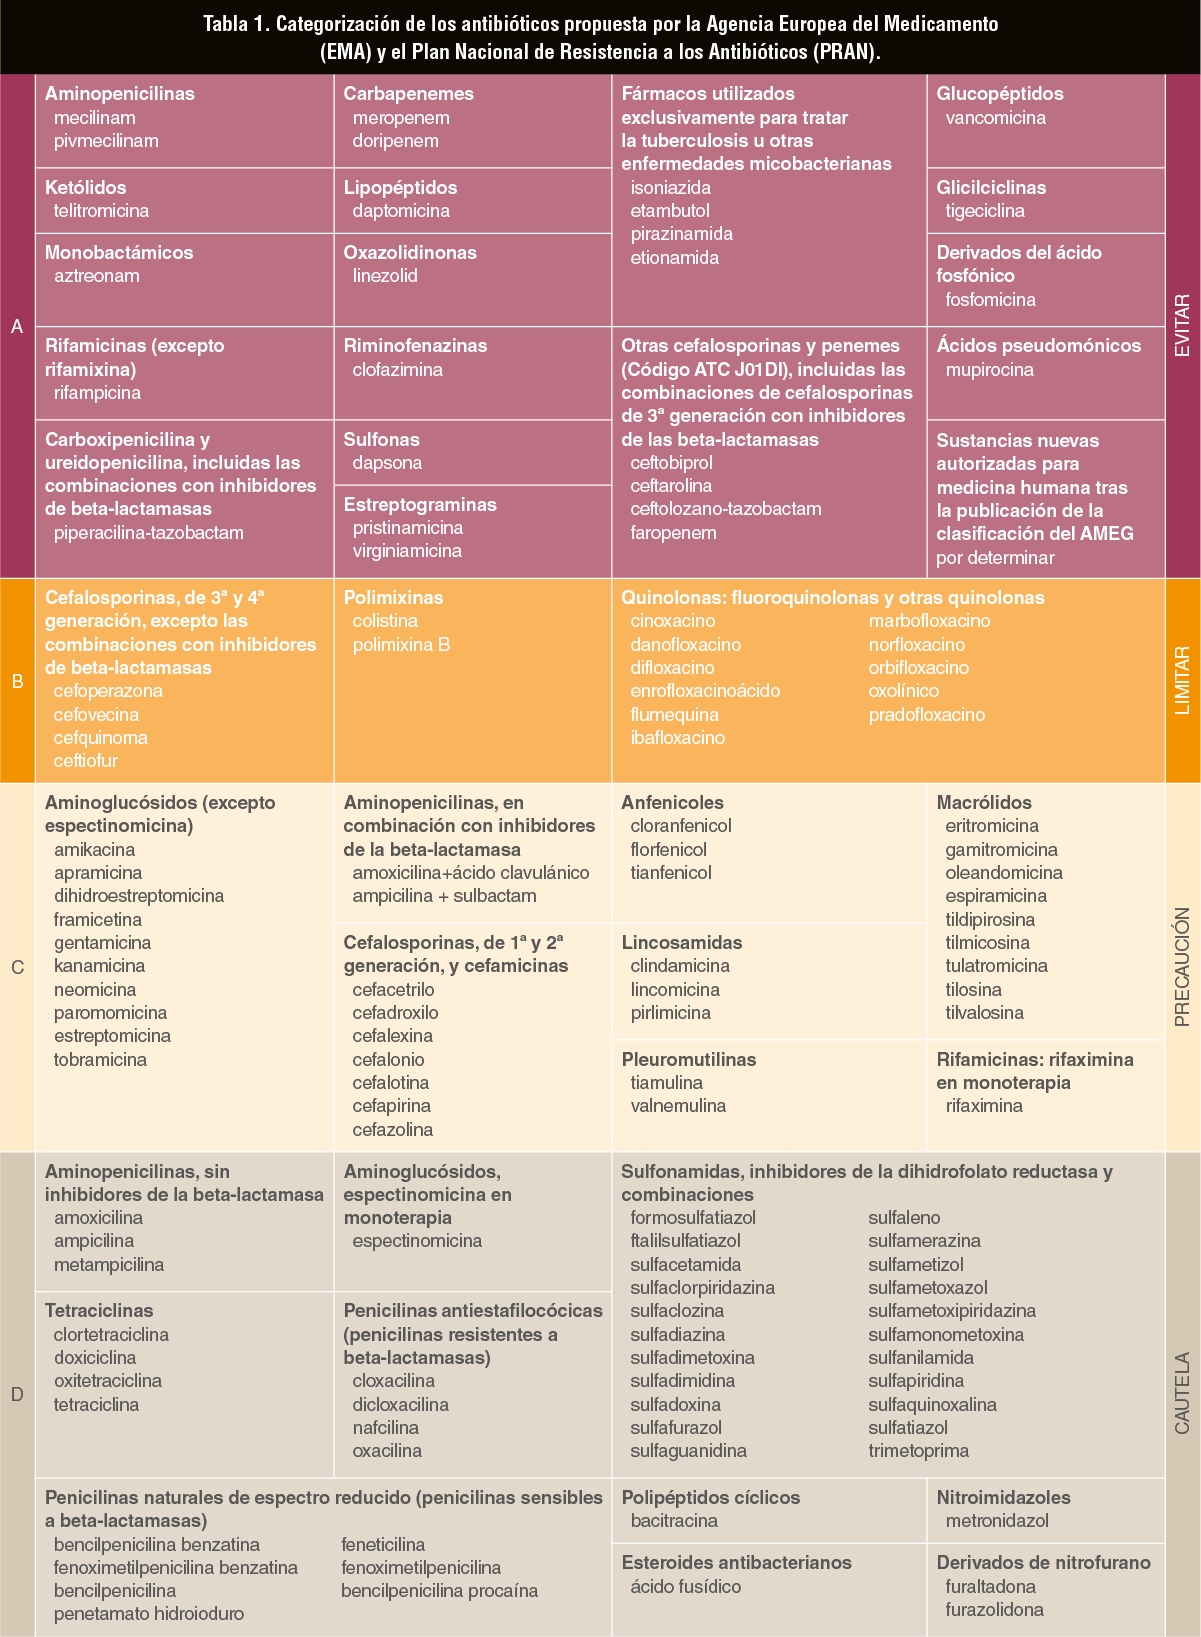 Tabla 1. Categorización de los antibióticos propuesta por la Agencia Europea del Medicamento (EMA) y el Plan Nacional de Resistencia a los Antibióticos (PRAN).